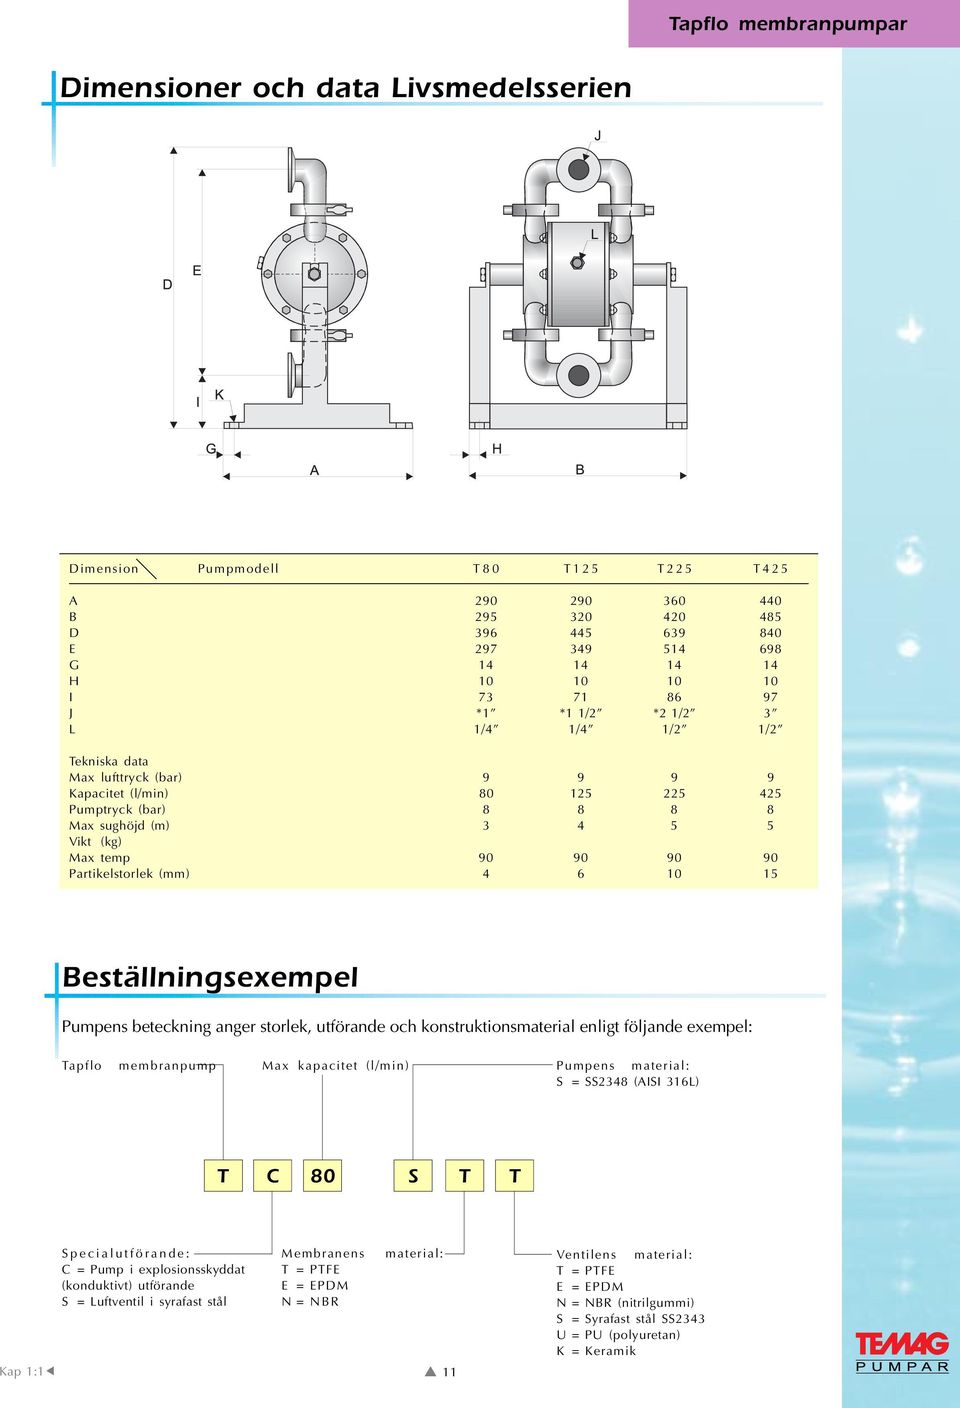 Partikelstorlek (mm) 4 6 10 15 Beställningsexempel Pumpens beteckning anger storlek, utförande och konstruktionsmaterial enligt följande exempel: Tapflo membranpump Max kapacitet (l/min) Pumpens